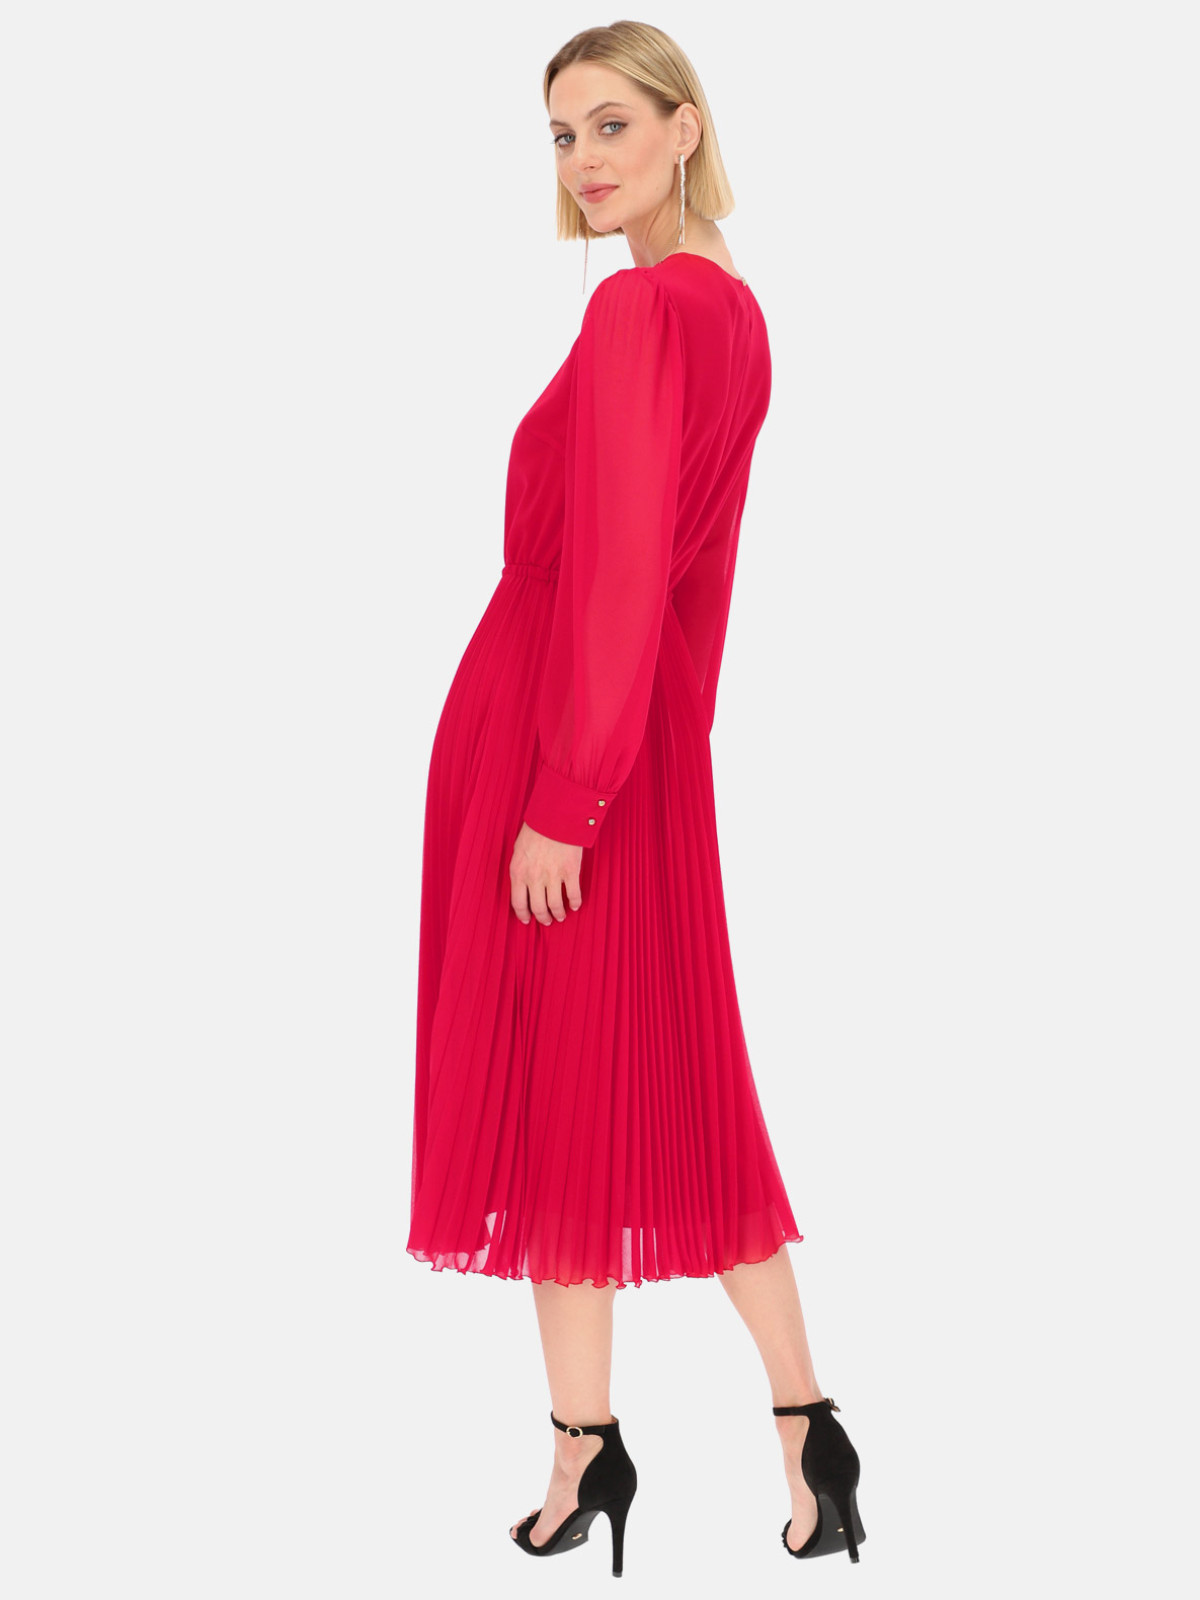 Jak ożywić swoją stylizację - czerwona sukienka